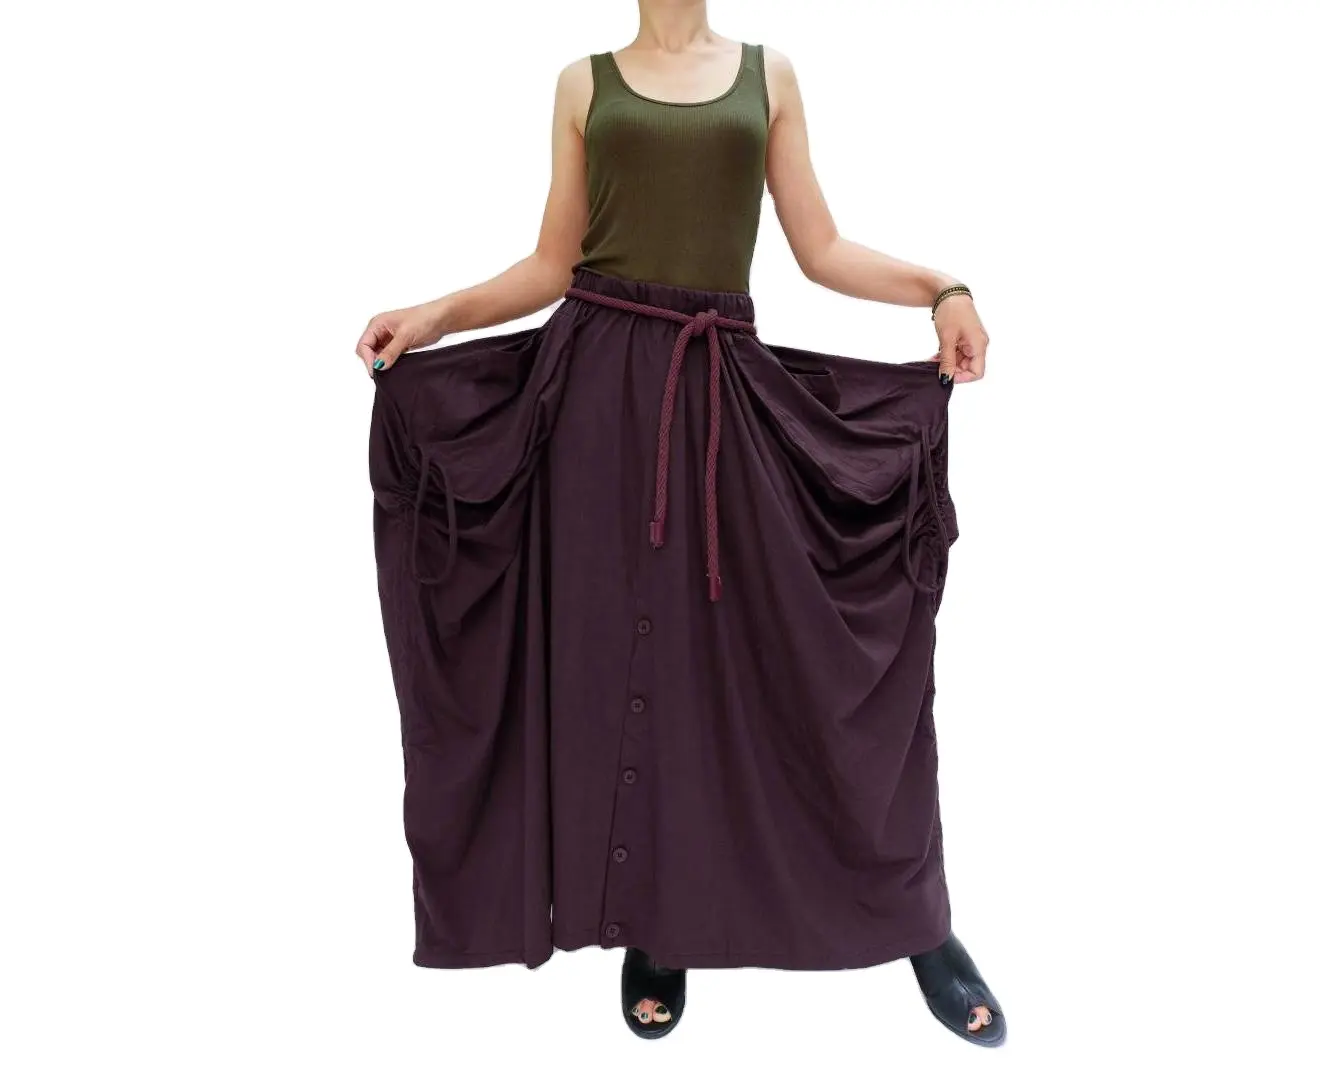 समर ब्रीज़: विस्कोस रेयॉन फ्लेयर्ड स्कर्ट पैंट - महिलाओं के लिए आकर्षक समर बॉटम्स, सहज स्टाइल के लिए महिलाओं के लिए समर बॉटम्स।